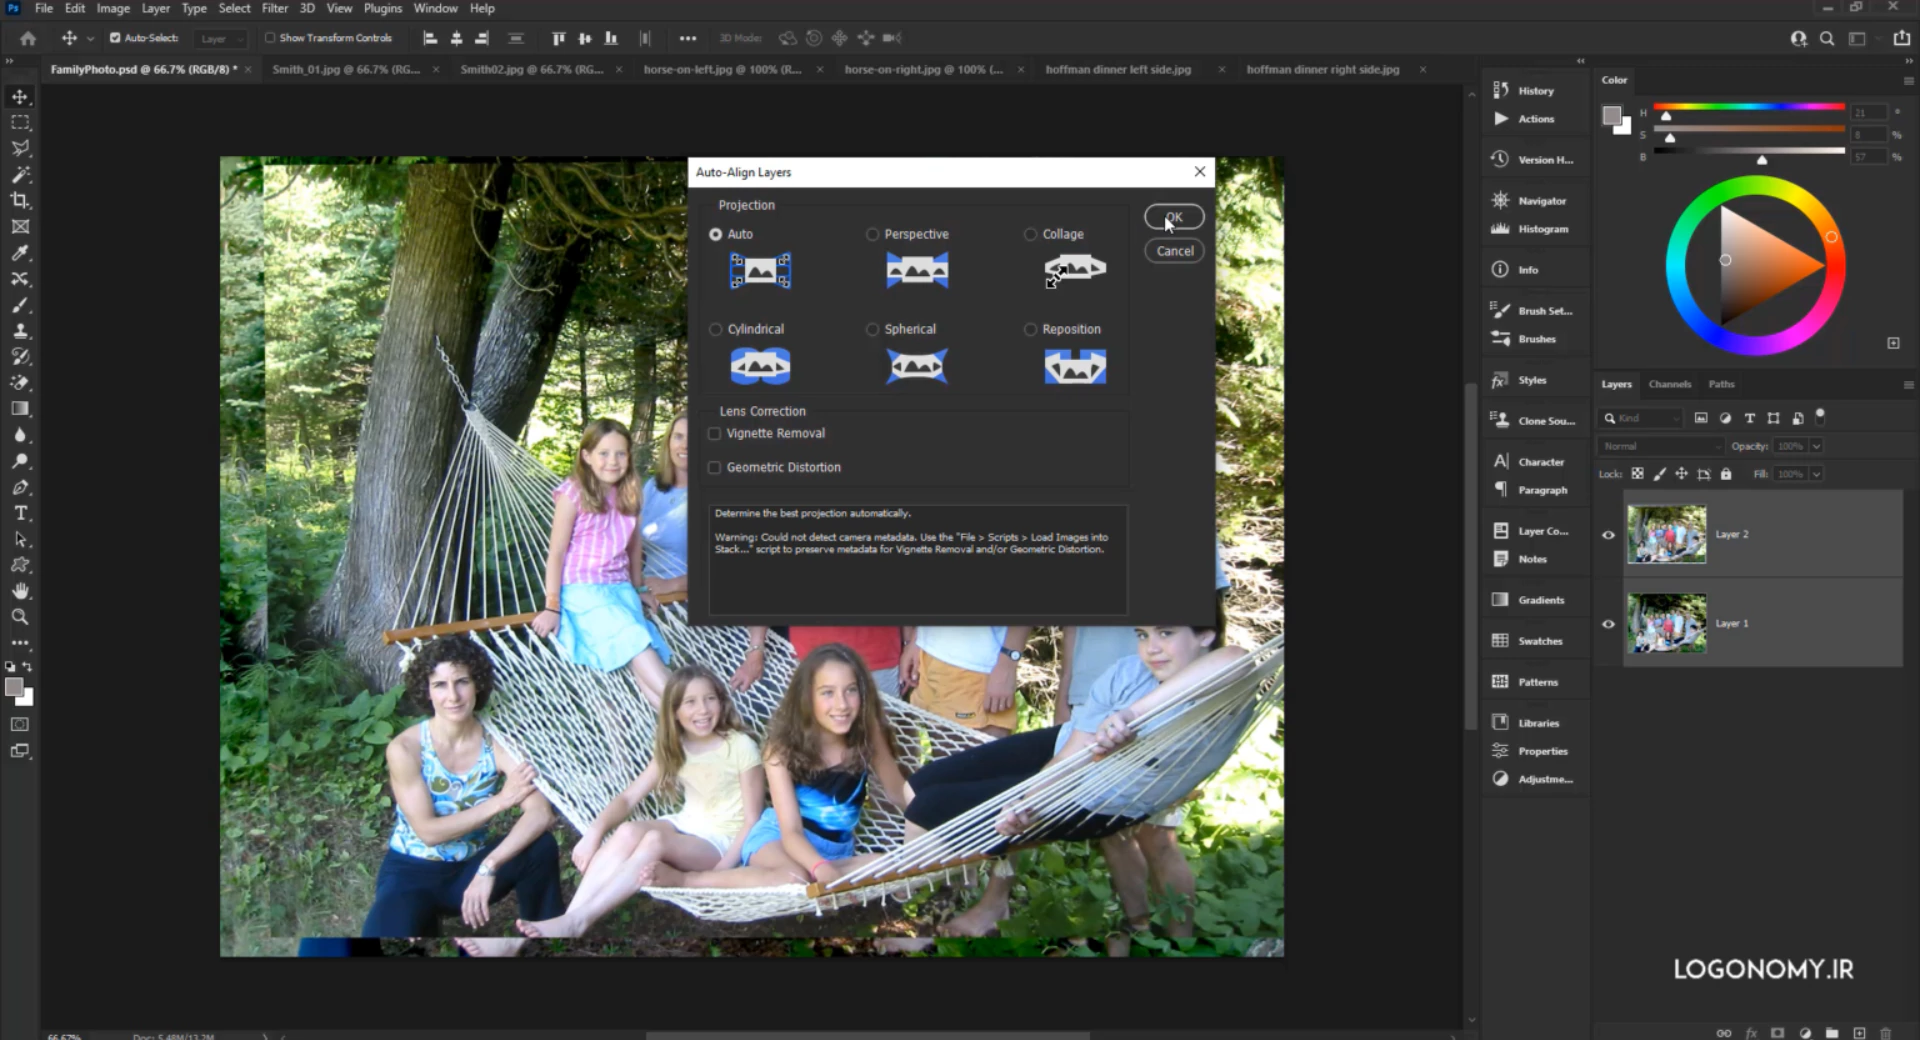 تراز کردن تصاویر در برنامه ی فتوشاپ نسخه ۲۰۲۰ با استفاده از Auto Align Layers